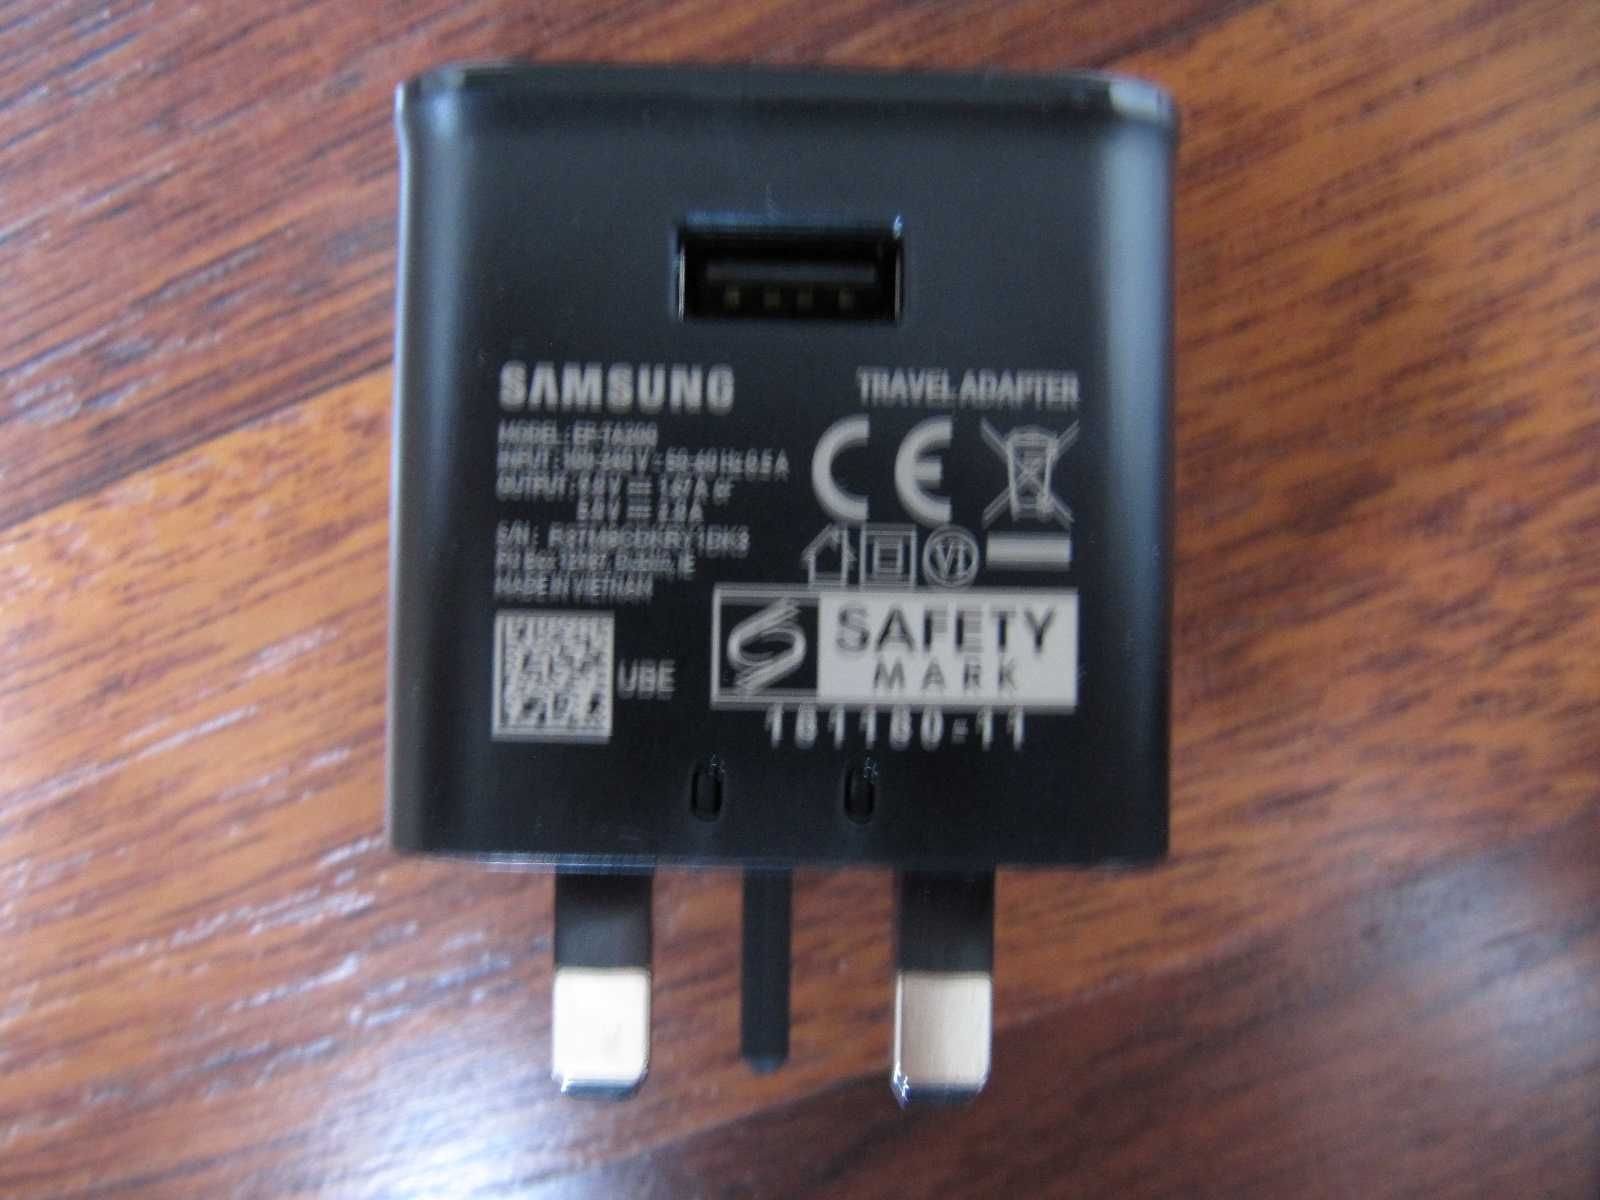 Ładowarka Samsung EP-TA200 Quick Charge (wersja UK) 2A zasilacz